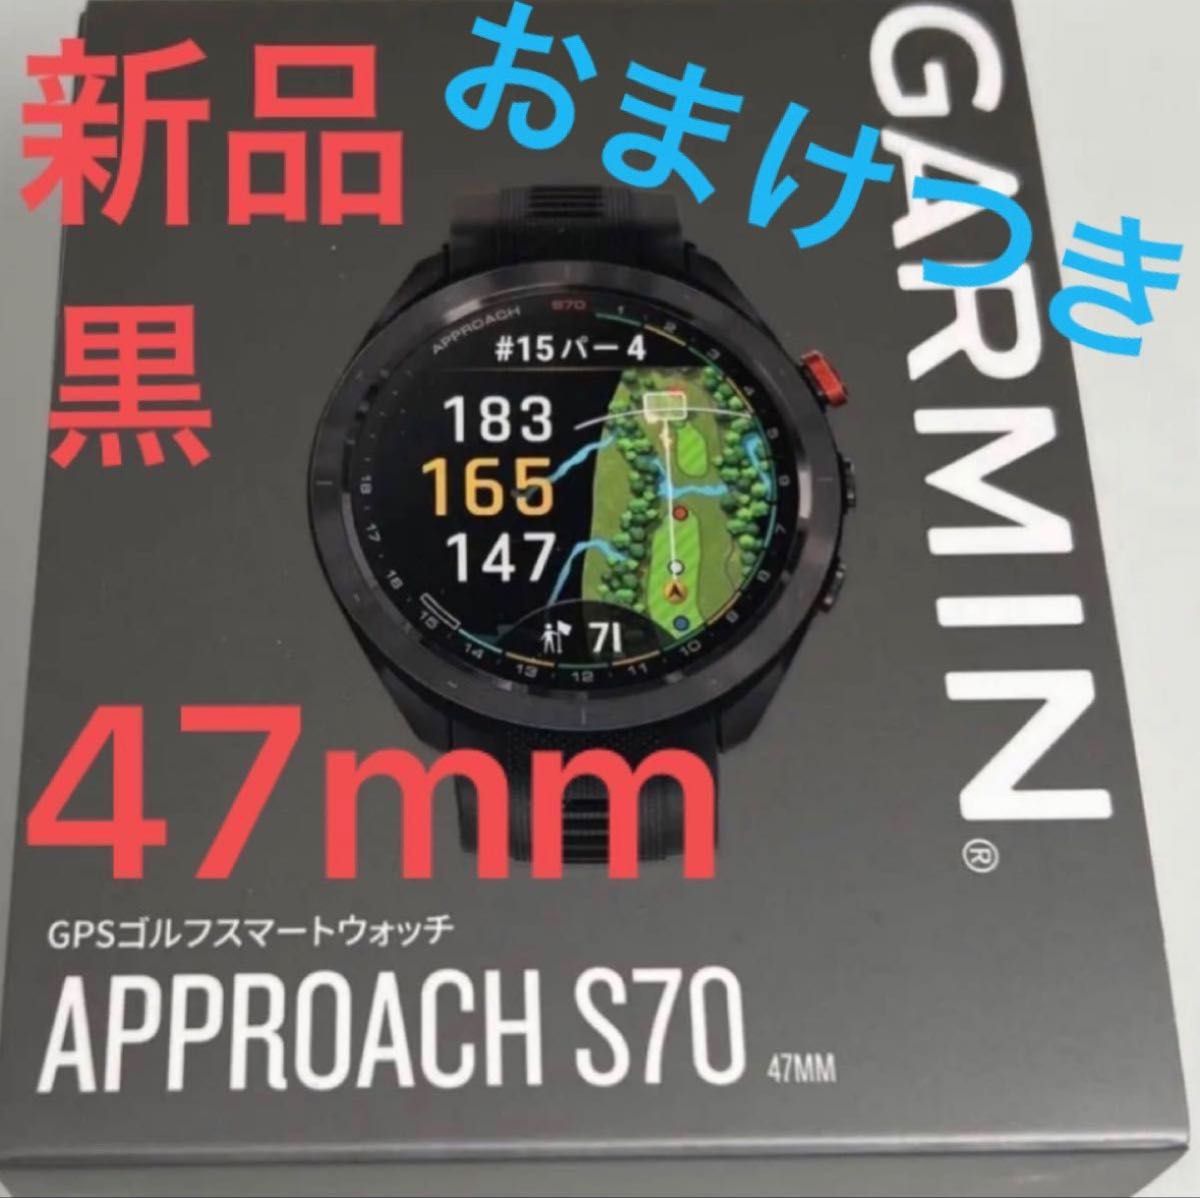 新品 黒 47mm ガーミン アプローチ S70 Garmin 010-02746-22 approach